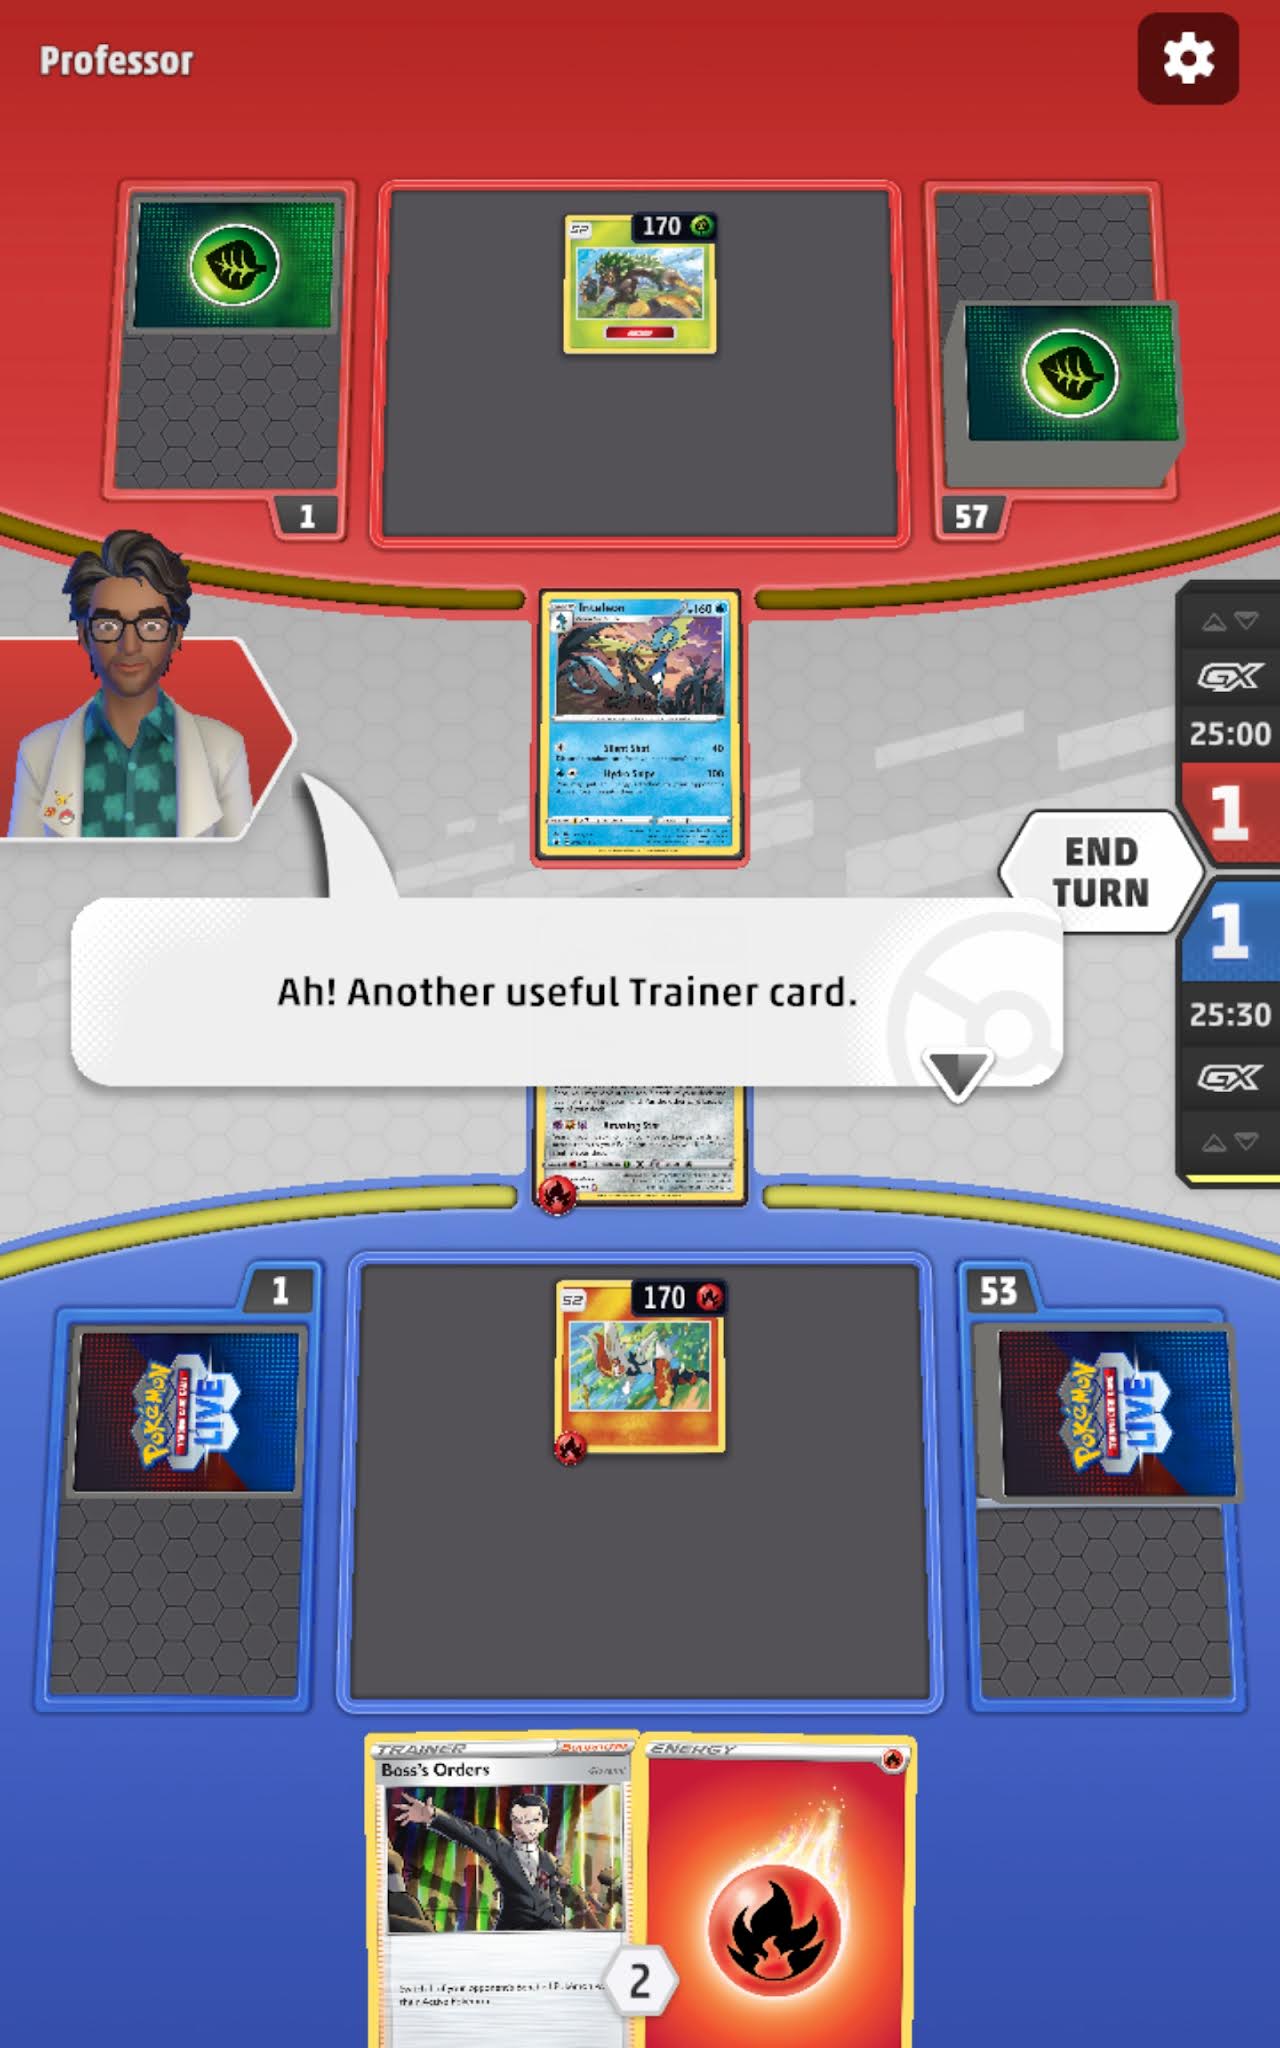 Pokemon Trading Card Game Live: o jogo de cartas que agora ganha vida  online-Blog Hitech